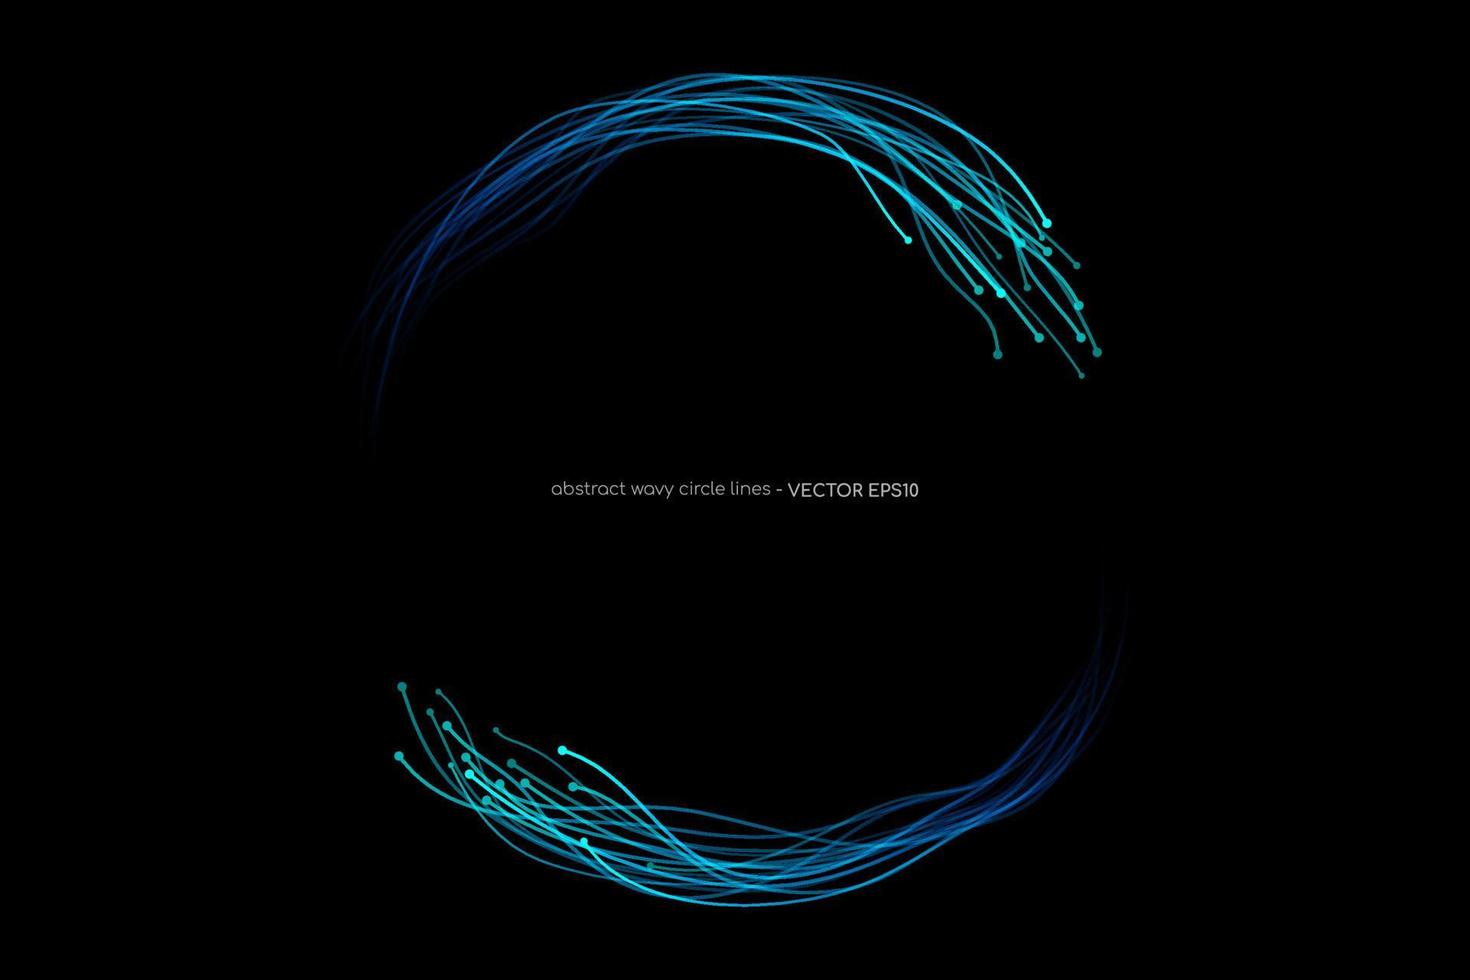 abstrato ondulado dinâmico luz azul linhas círculo redemoinho quadro redondo isolado no fundo preto no conceito de tecnologia, rede neural, neurologia, ciência, música. vetor